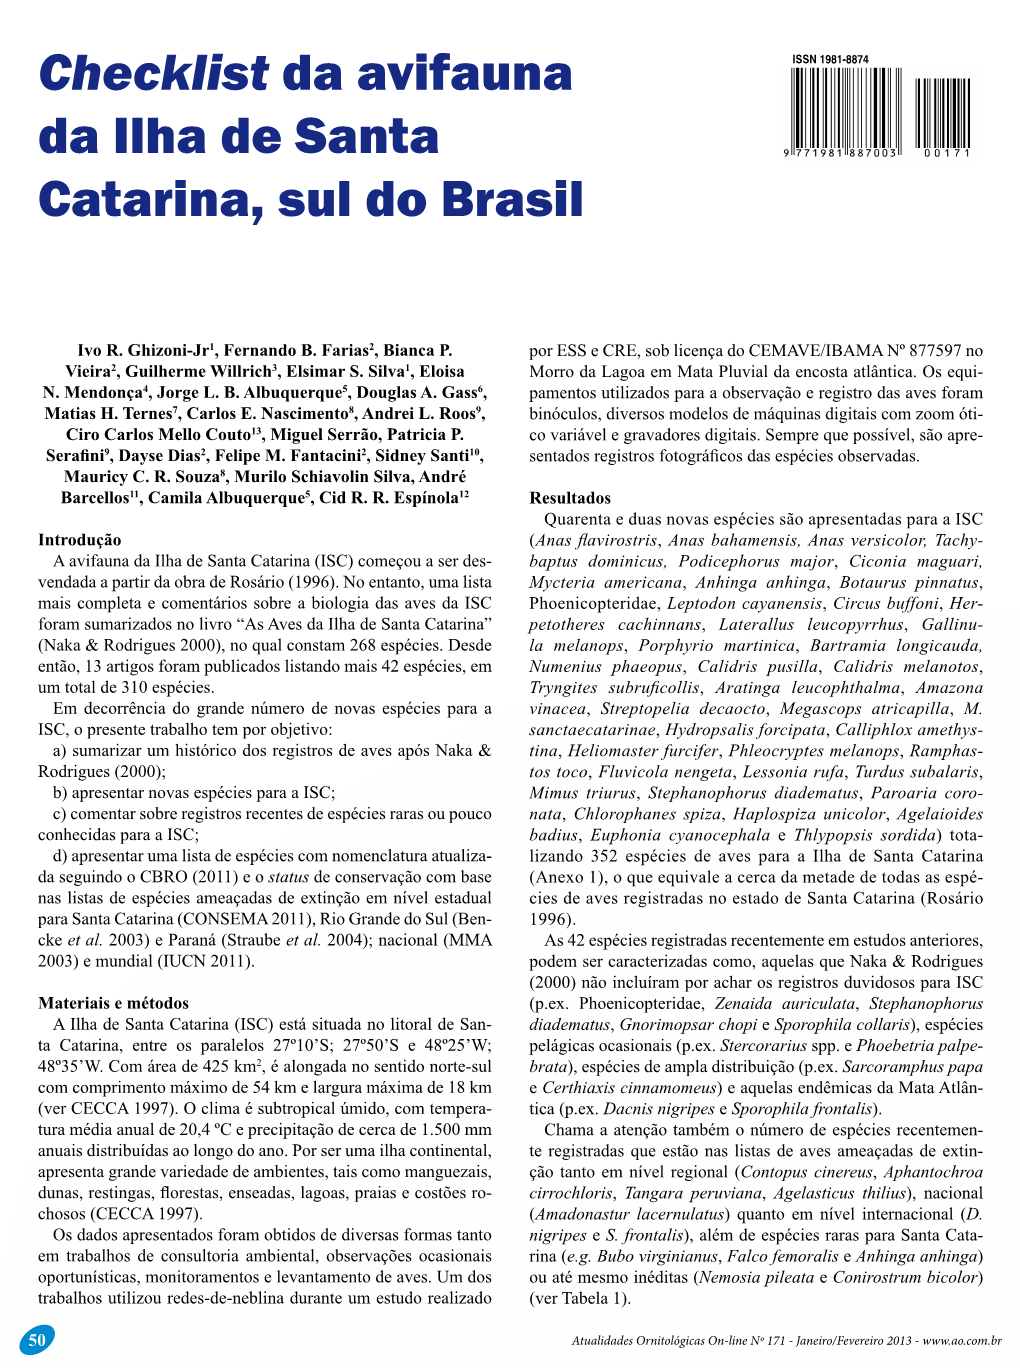 Checklist Da Avifauna Da Ilha De Santa Catarina, Sul Do Brasil